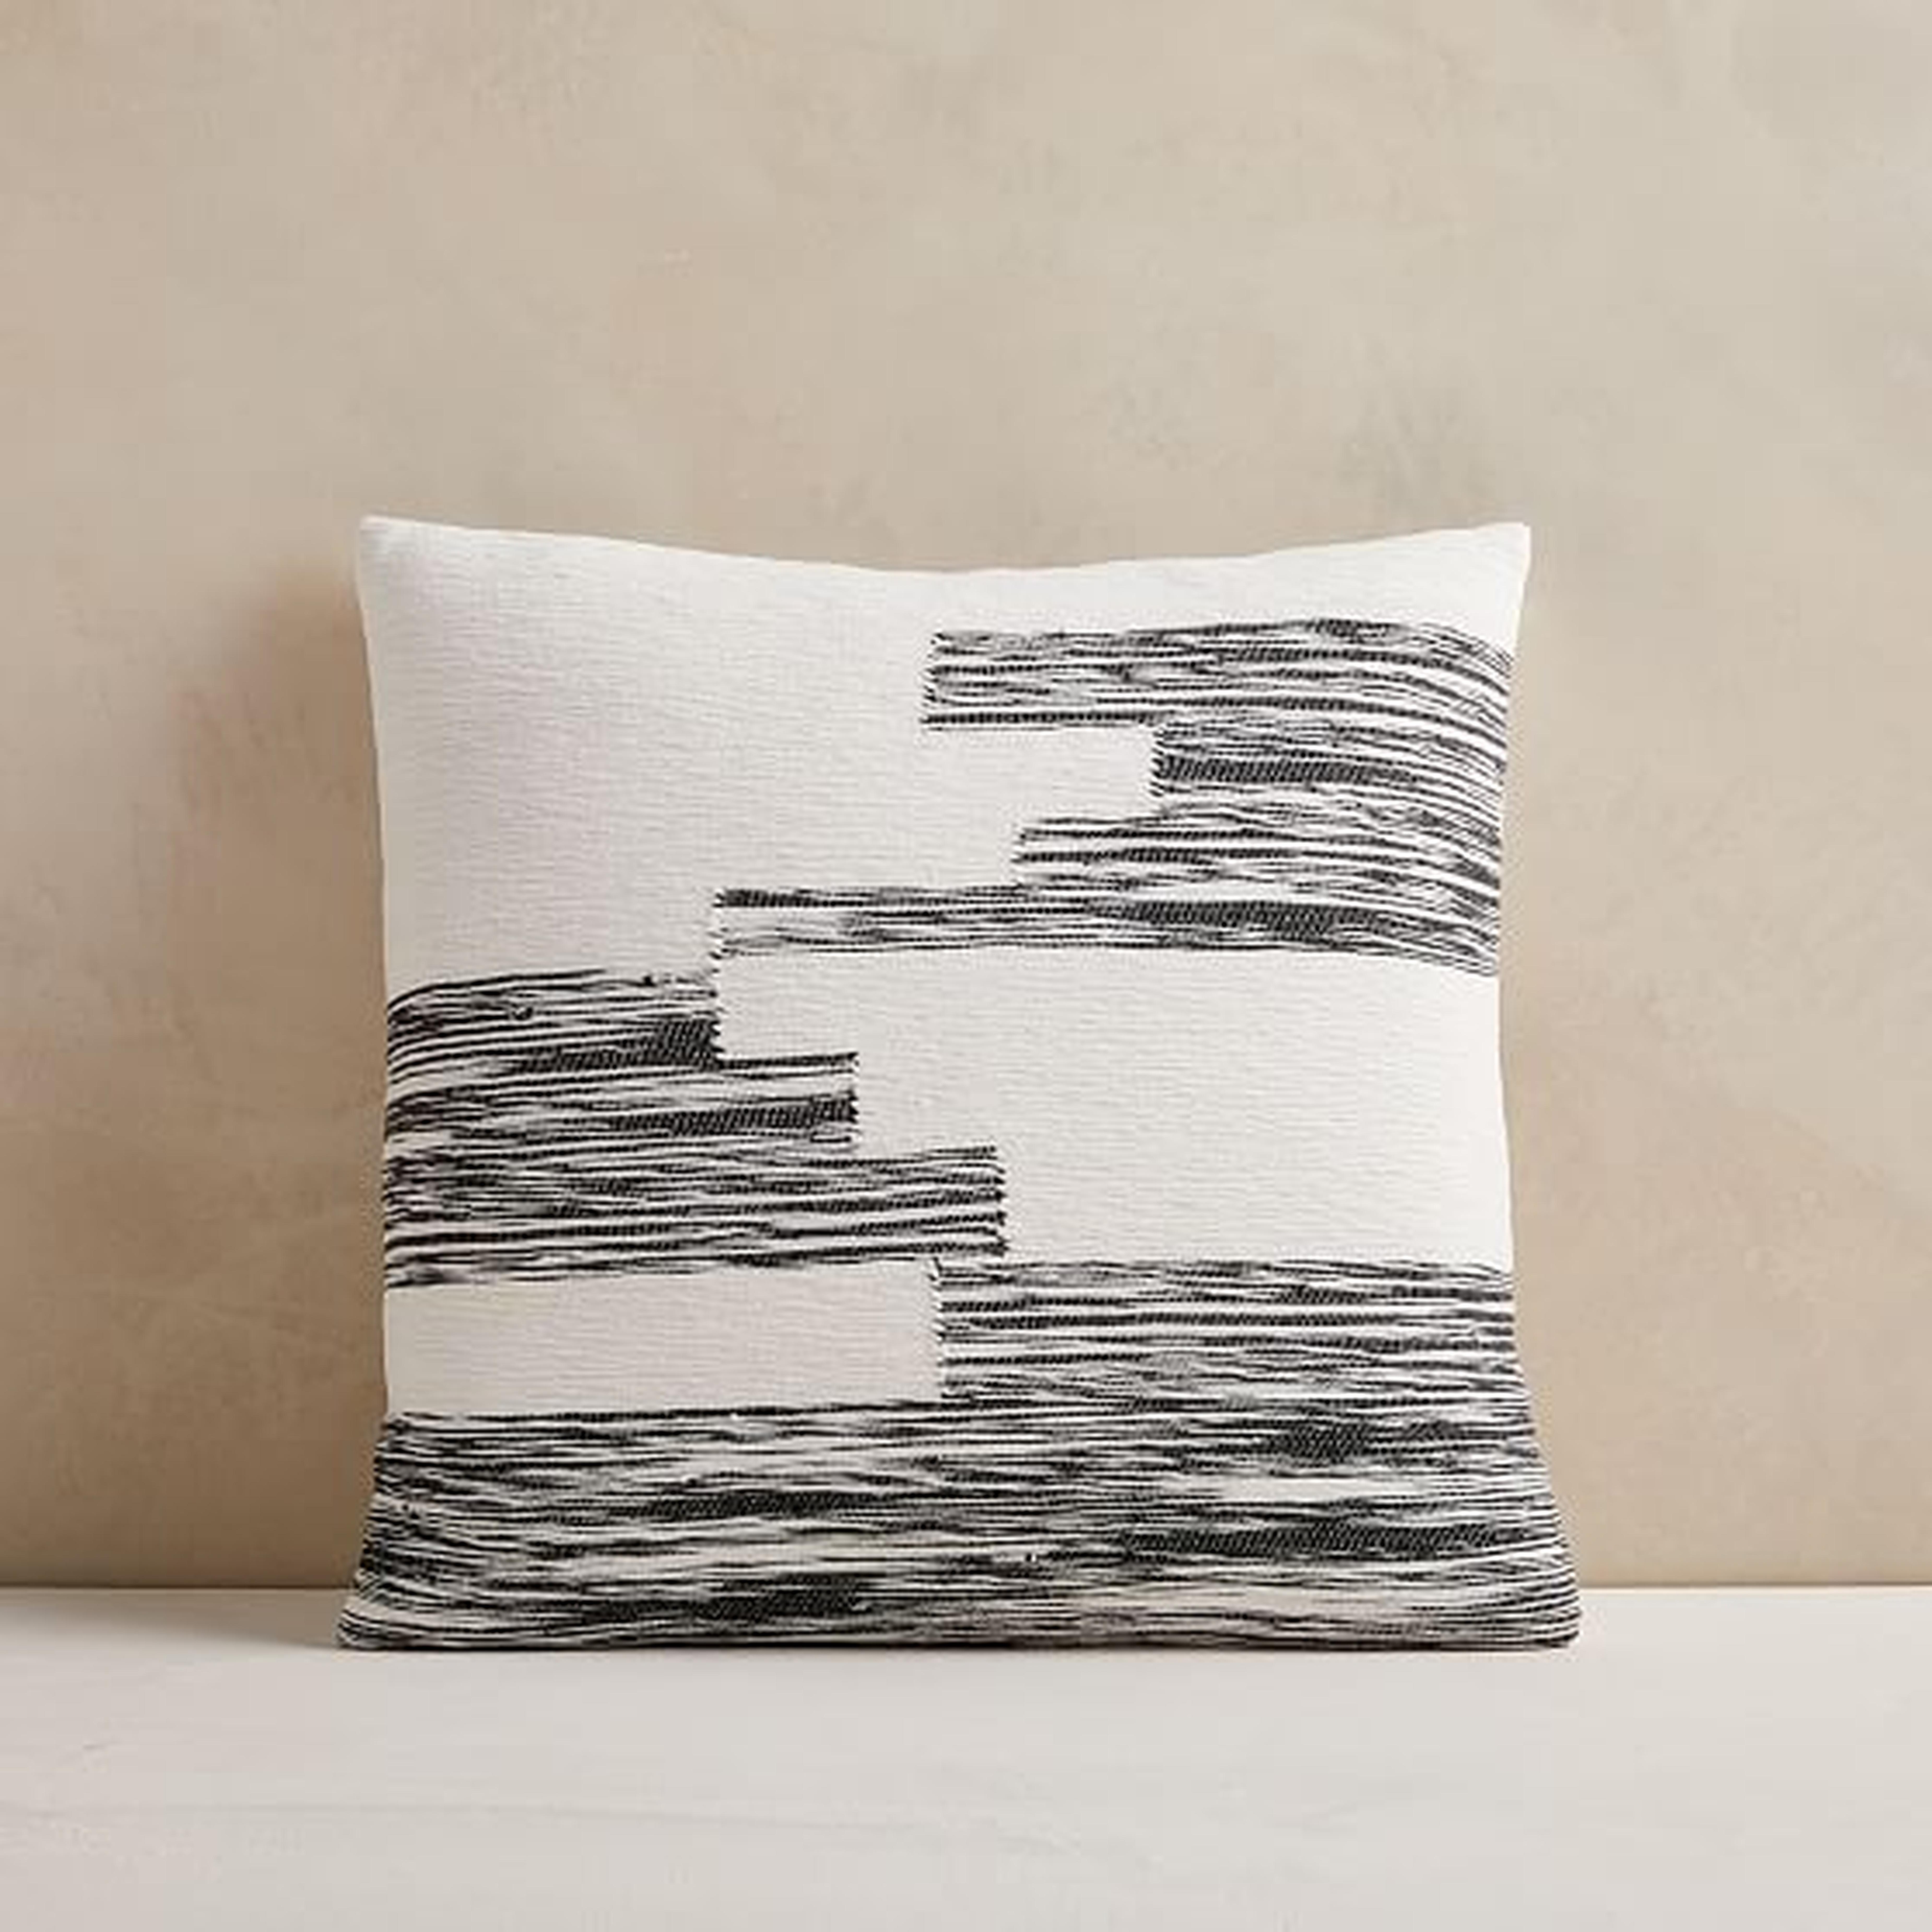 Cotton Variegated Colorblock Pillow Cover, 18" x 18", Black - West Elm